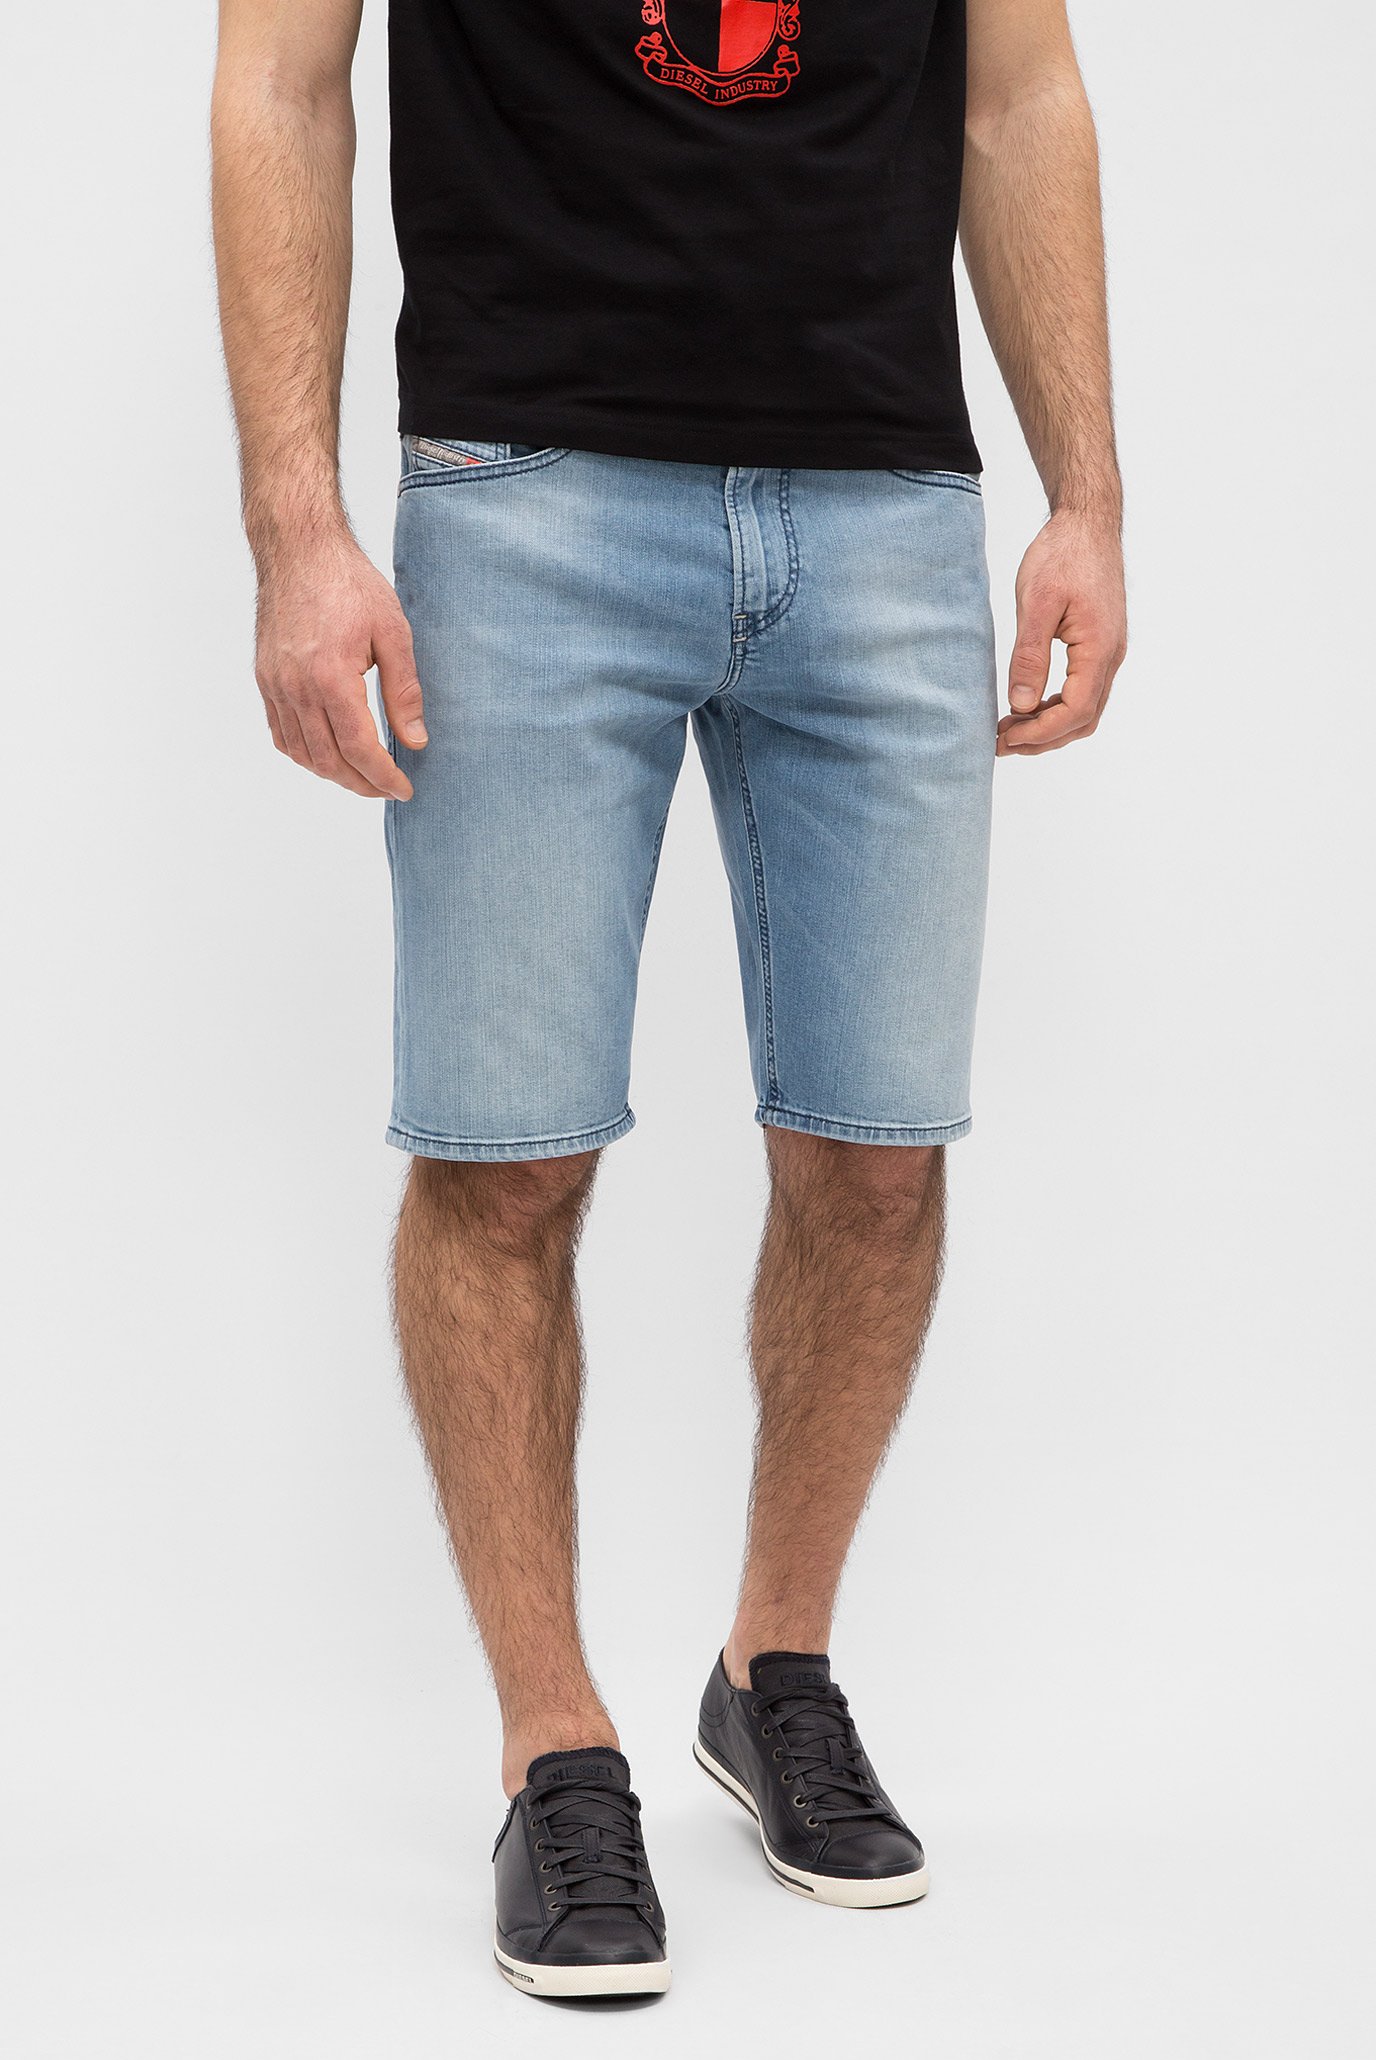 Чоловічі блакитні джинсові шорти THOSHORT CALZONCINI 1